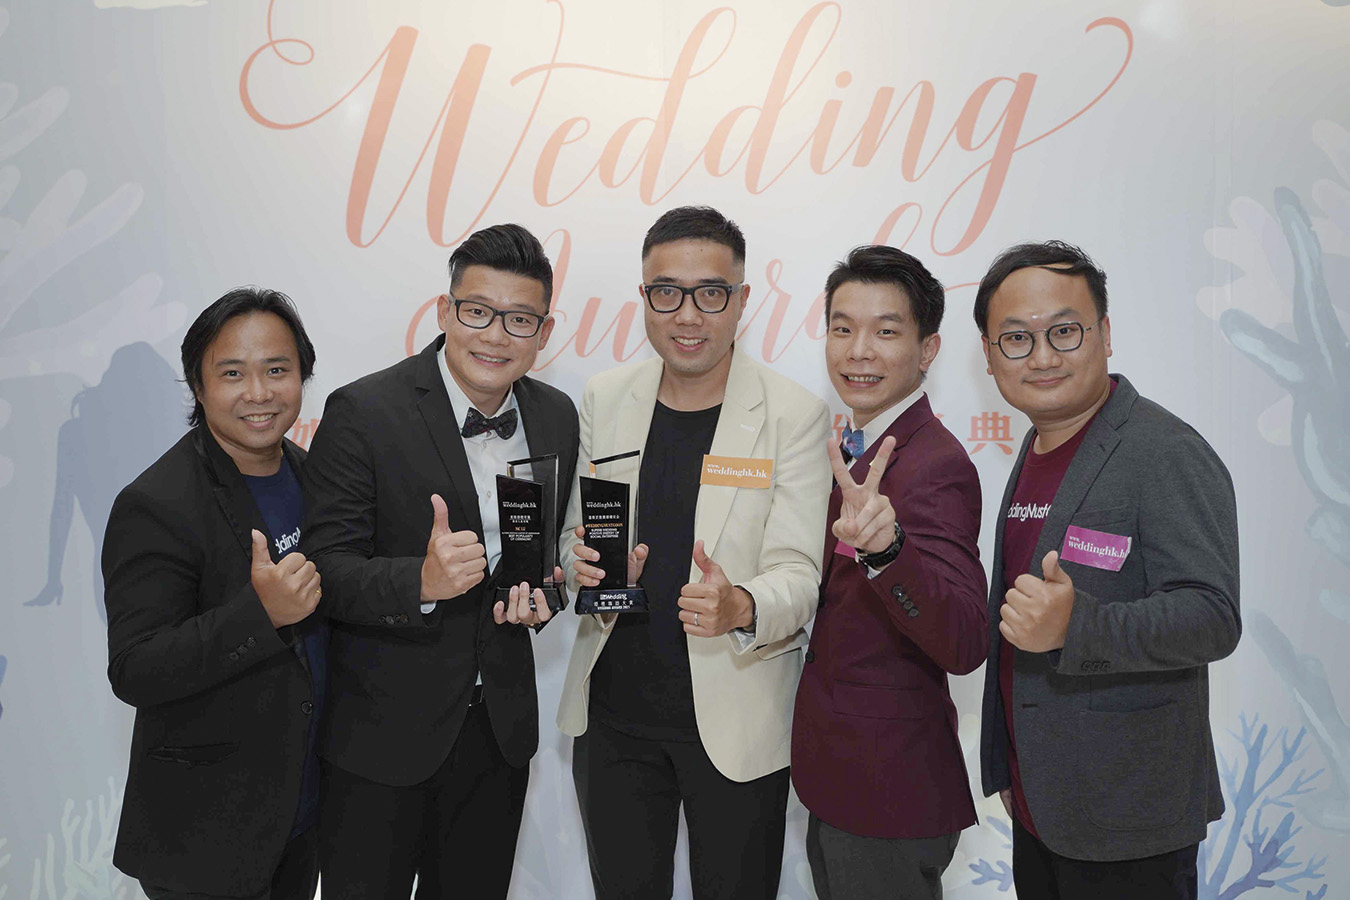 恭喜 #WeddingMustGoOn 得到星級正能量婚禮社企